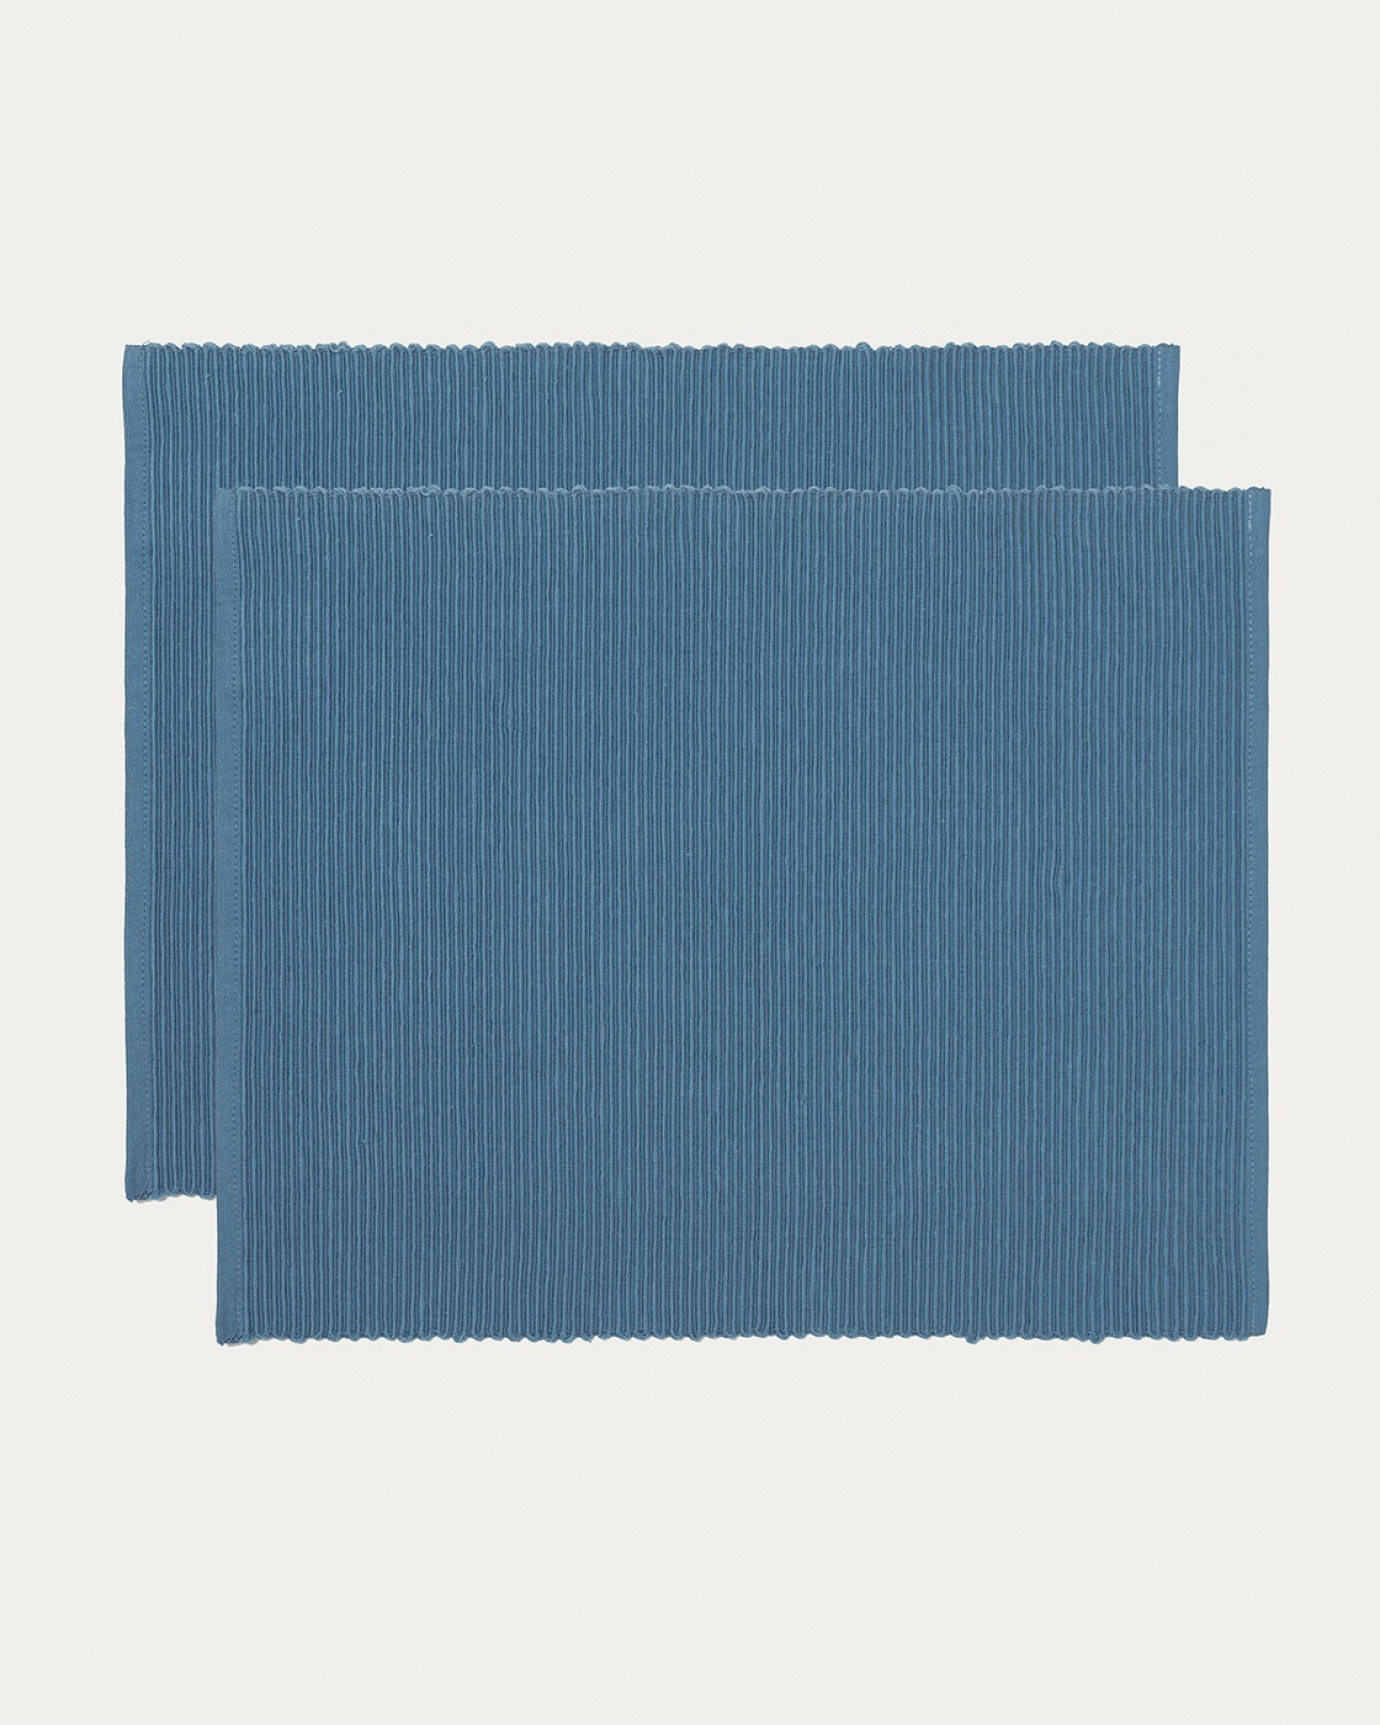 Immagine prodotto blu mare profondo tovaglietta UNI in morbido cotone a costine di qualità di LINUM DESIGN. Dimensioni 35x46 cm e venduto in 2-pezzi.